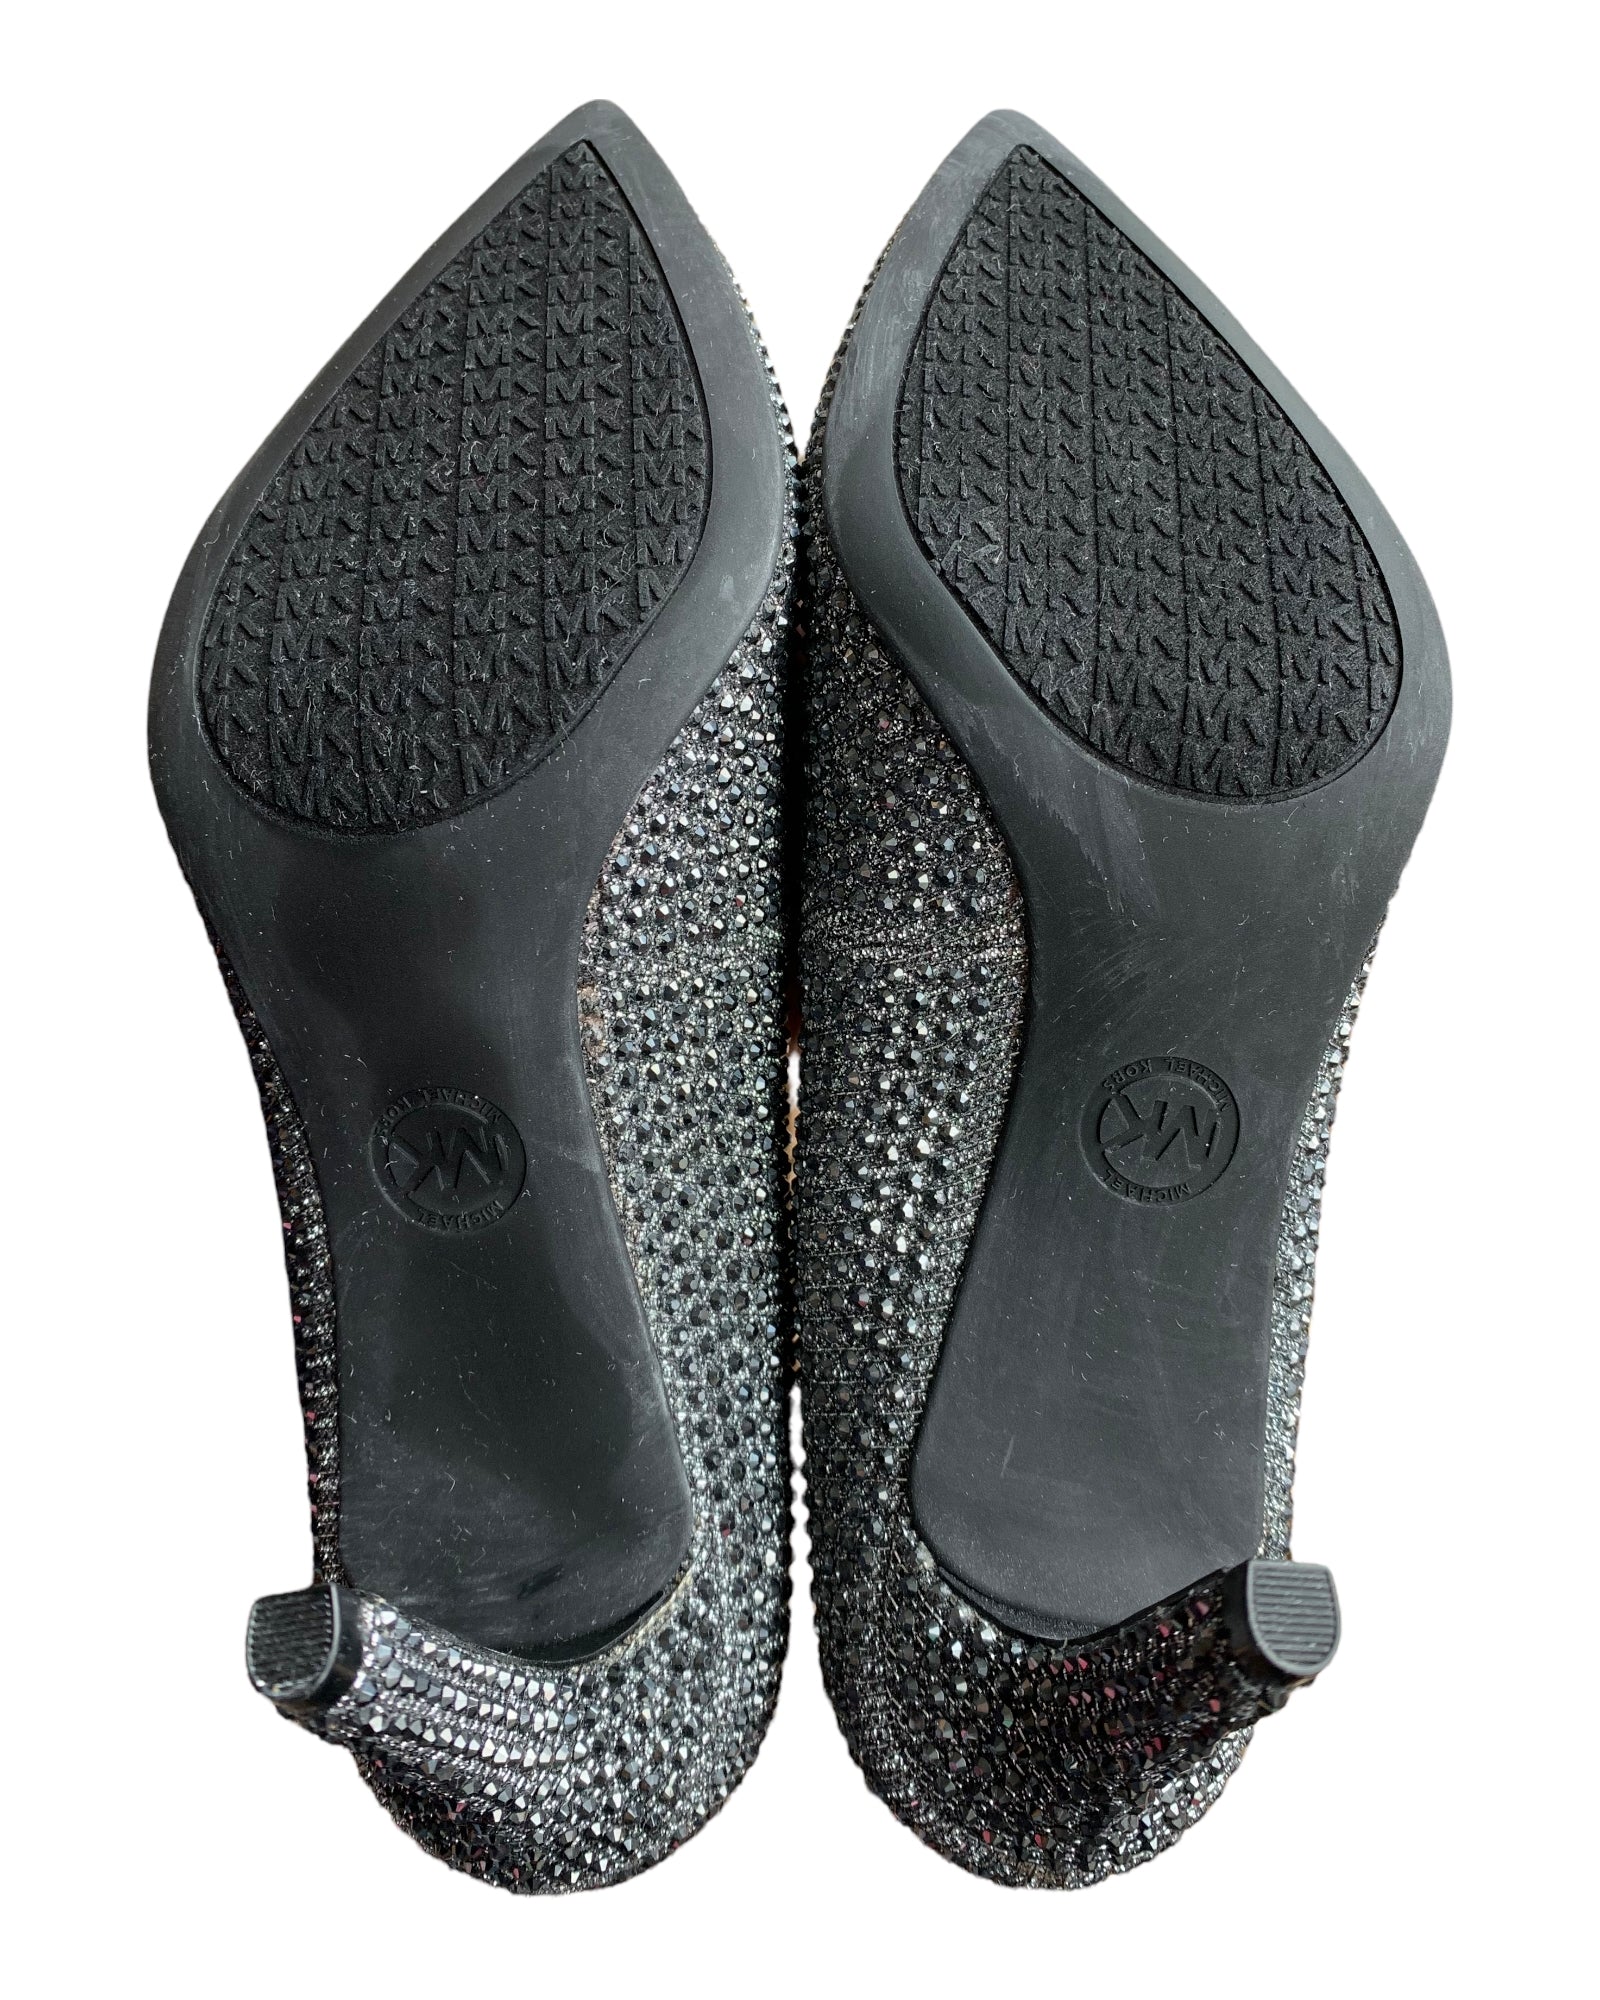 Michael Kors Dorothy Flex Pump Shoes, 7.5